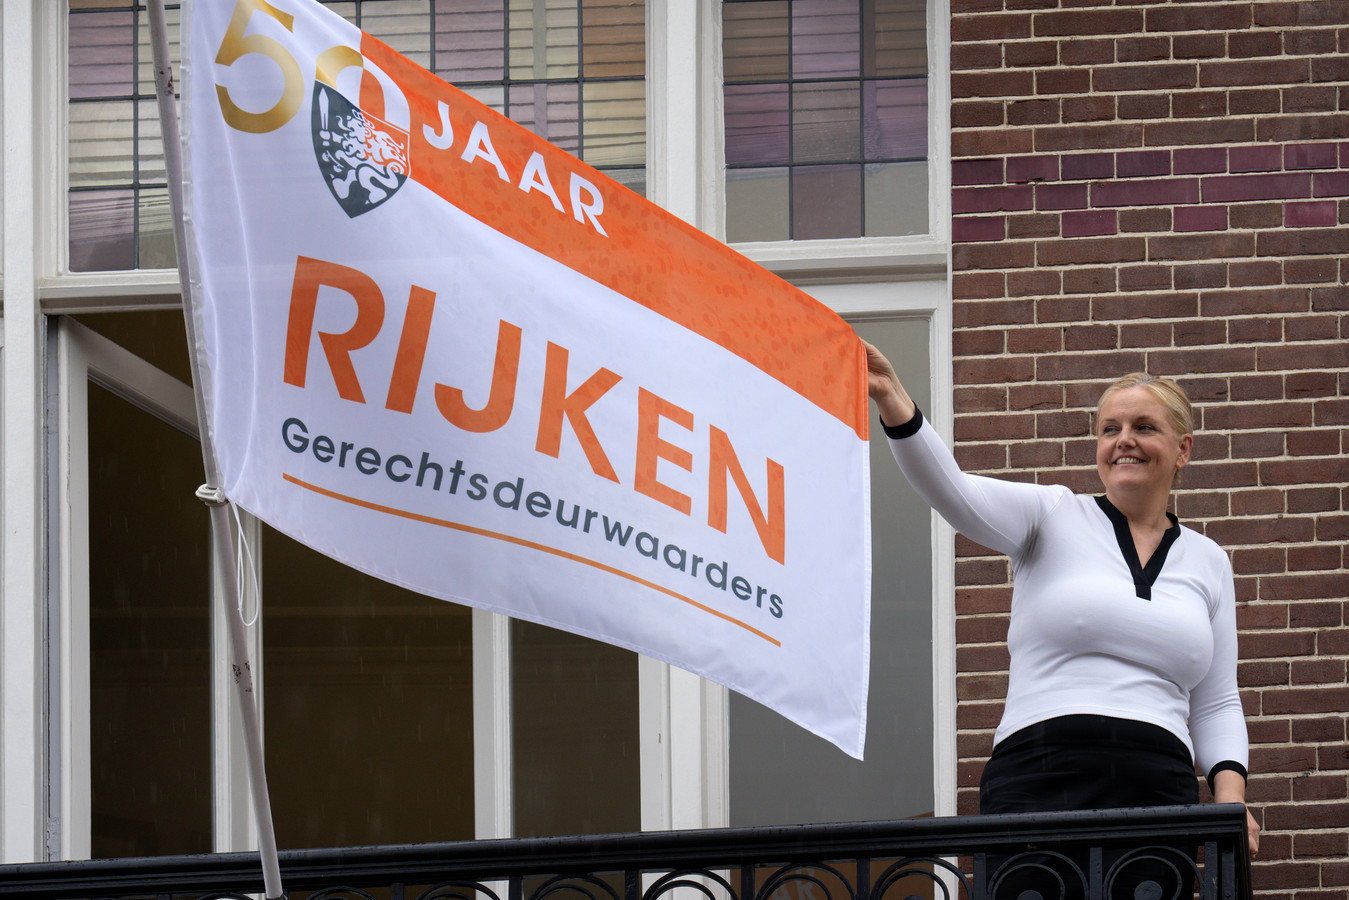 Directeur Carla Rijken heeft de vlag in top laten hijsen om het 50-jarig bestaan van Rijken Gerechtsdeurwaarders te vieren.